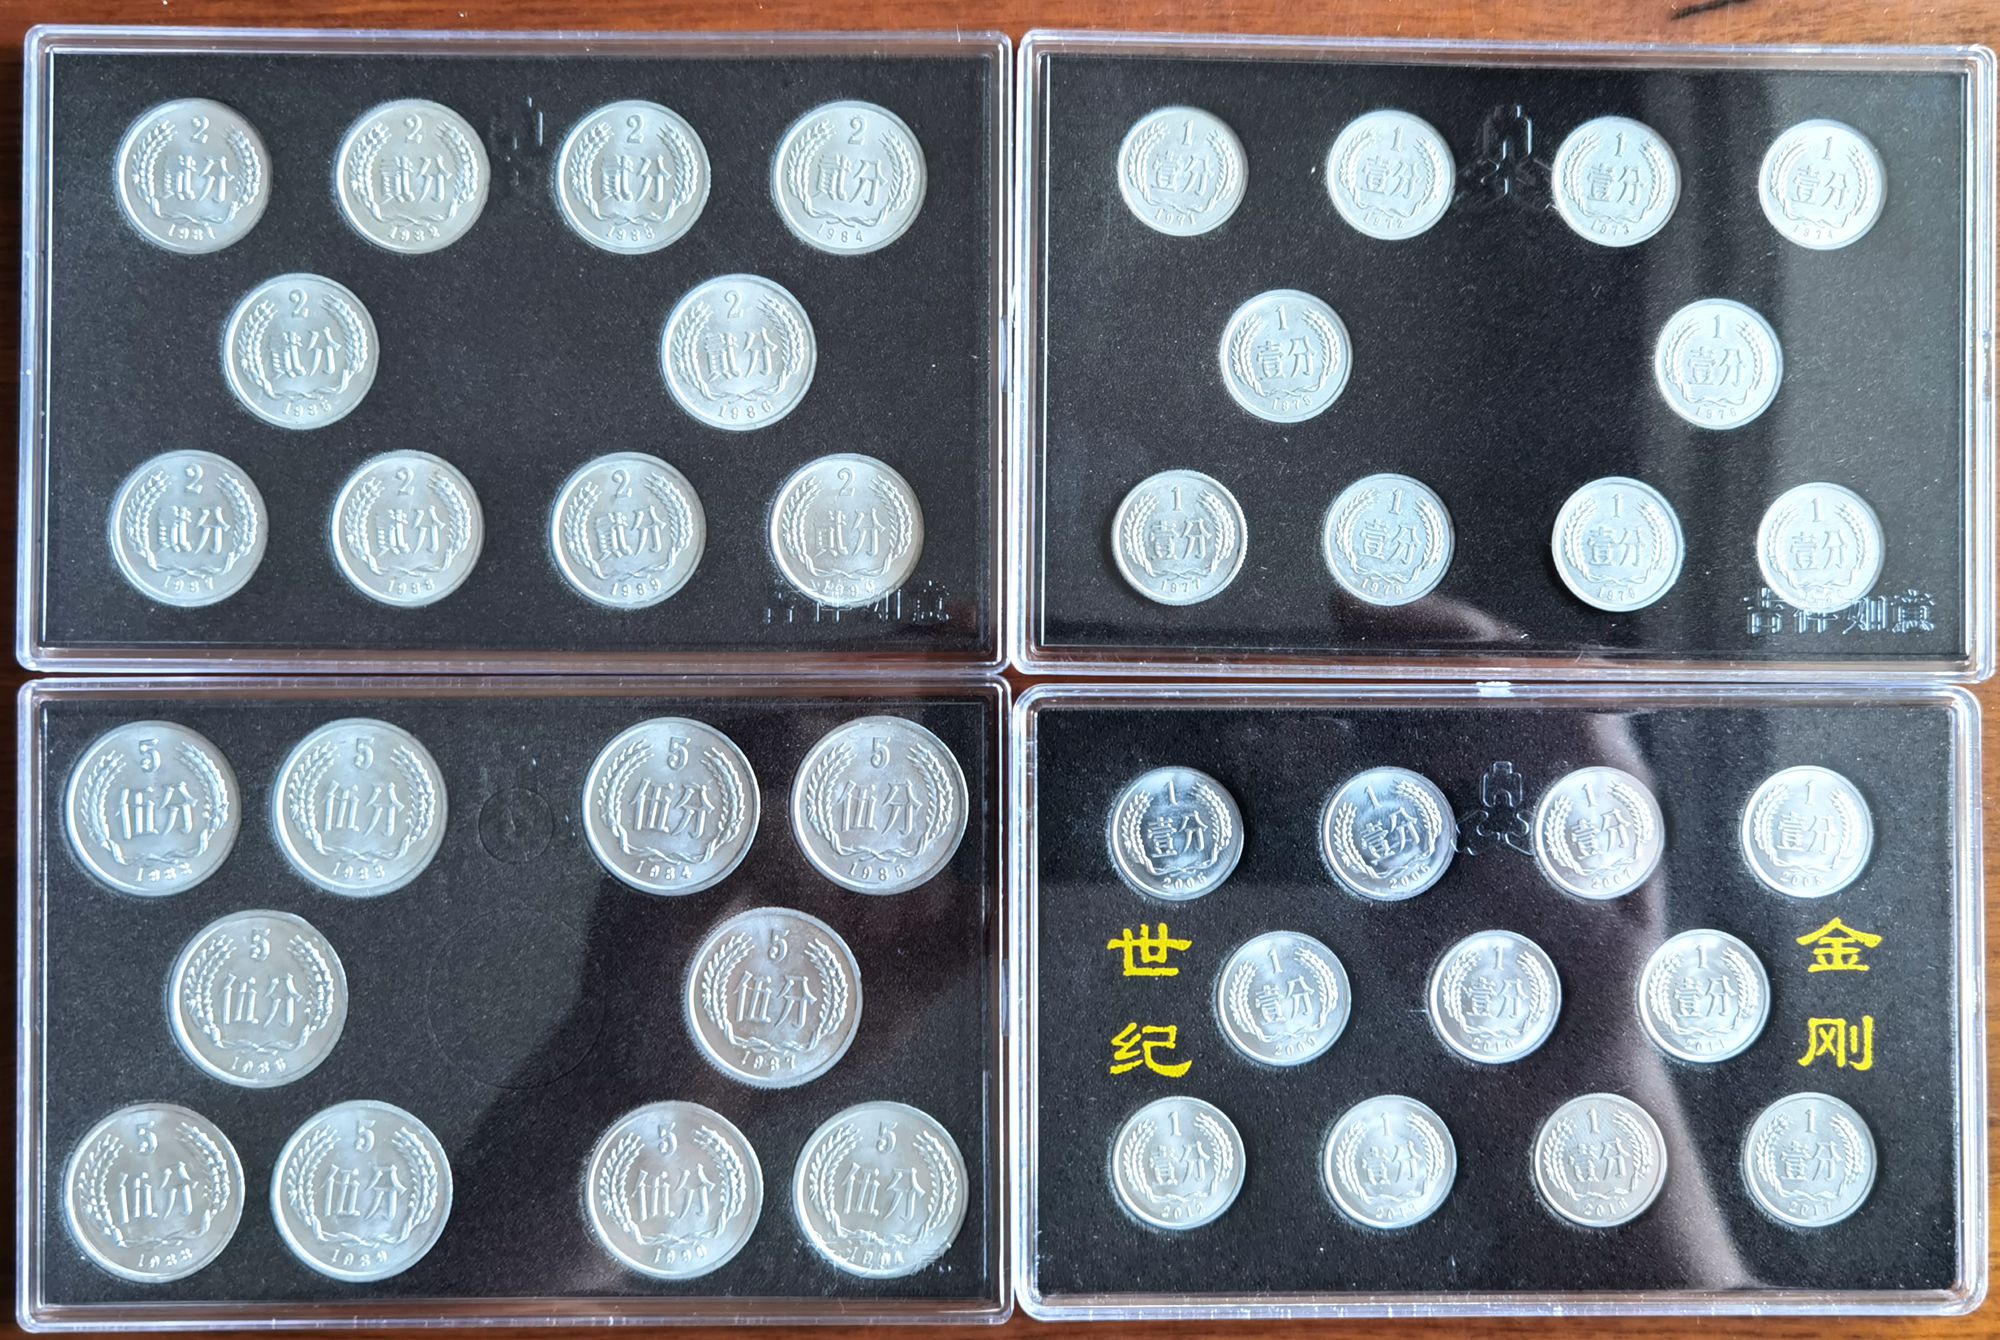 K7351, China Mint 1 Fen, 2 Fen, 5 Fen Coins, 41 Pcs with Box